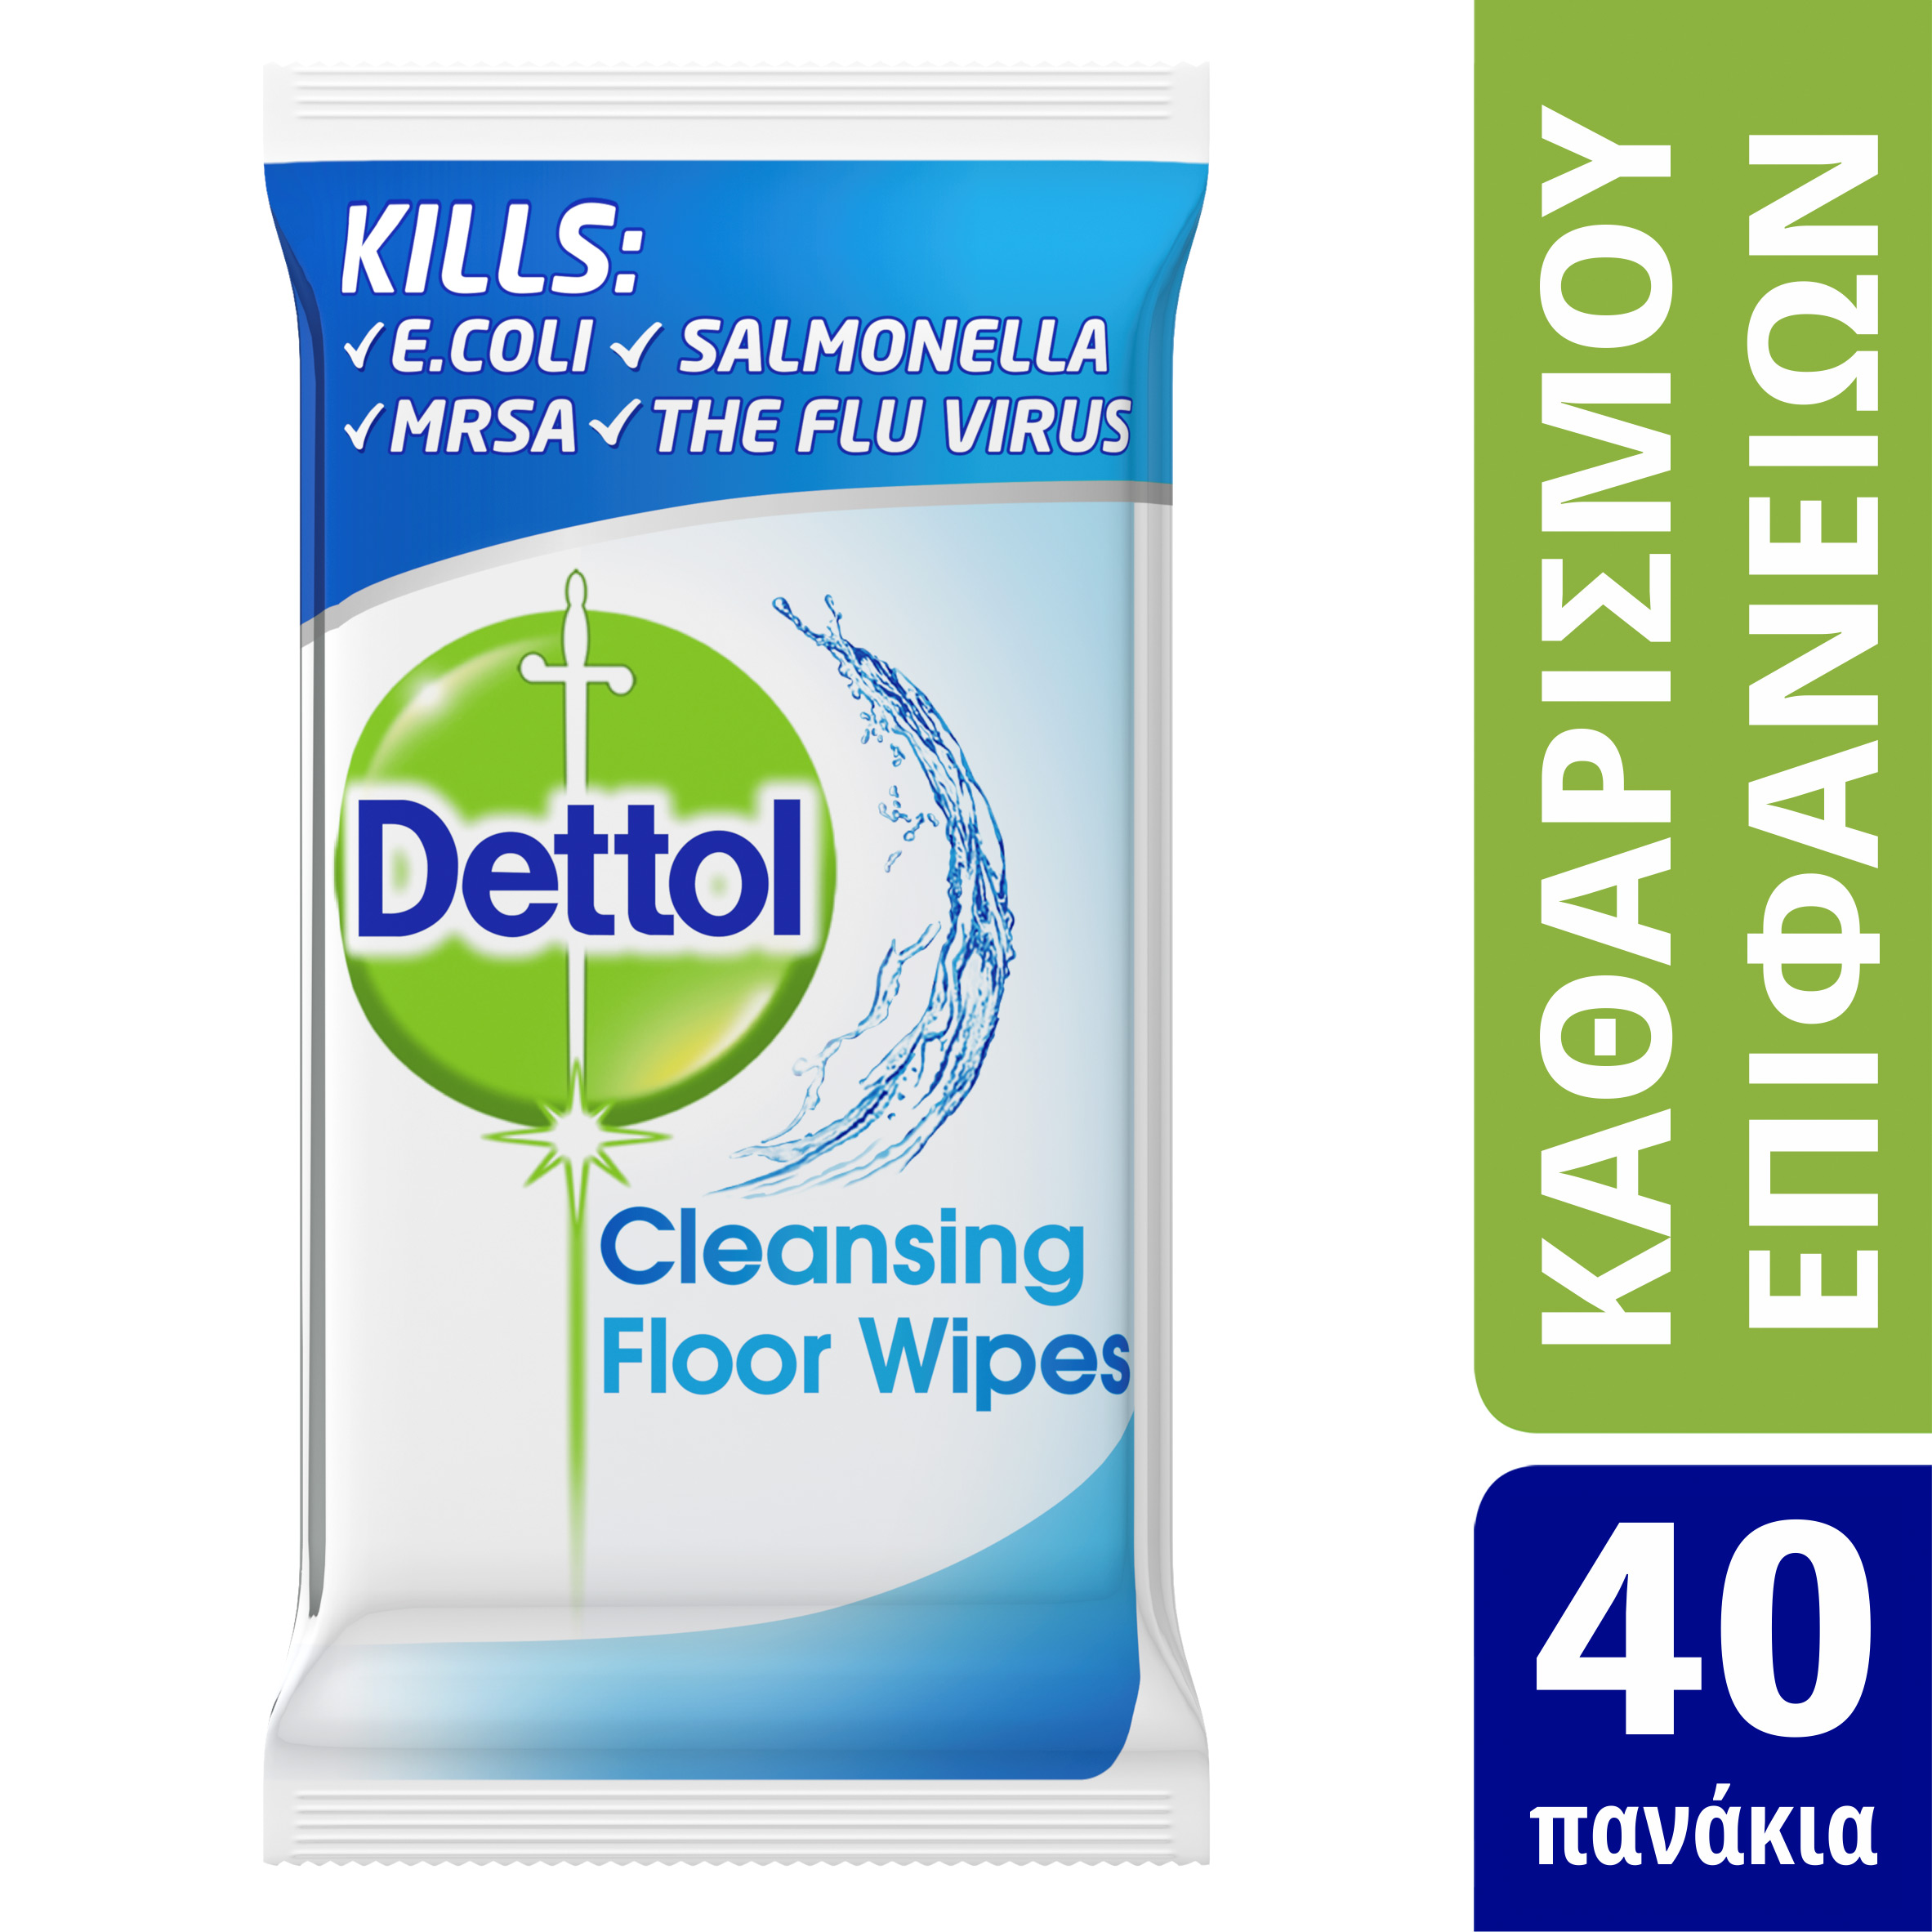 Dettol Cleanising Floor Wipes Απολυμαντικό 40 μαντηλάκια - Fedra